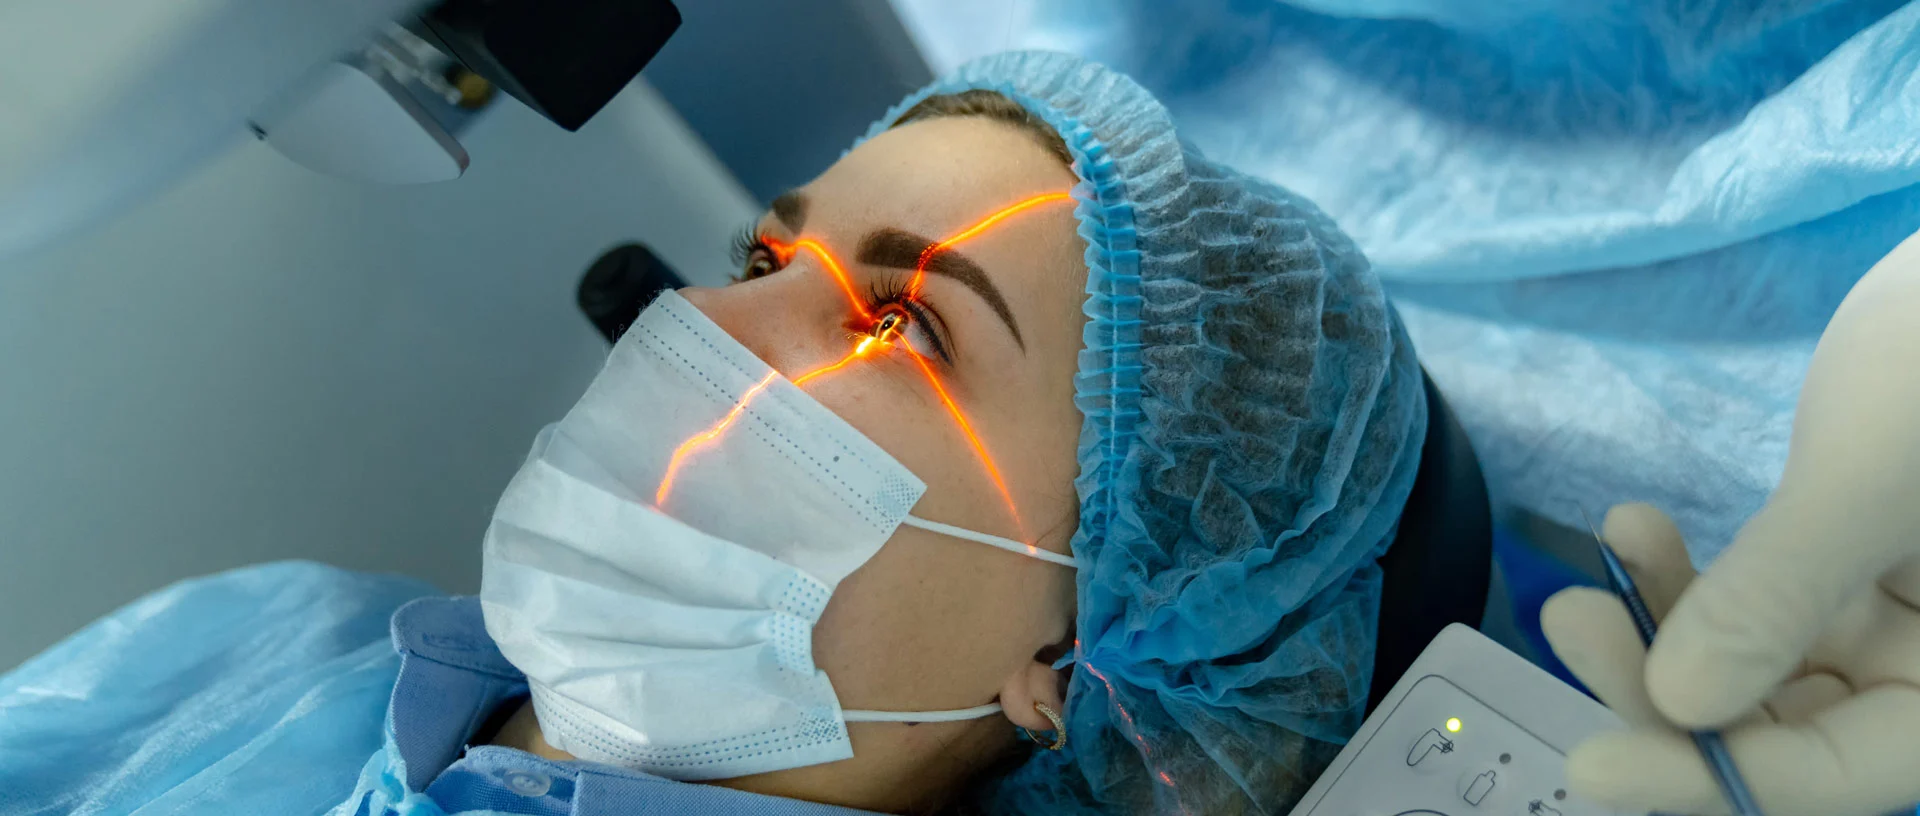 Eine Frau liegt unter einem medizinischen Gerät, das ihr Auge mit einem Laserstrahl abtastet